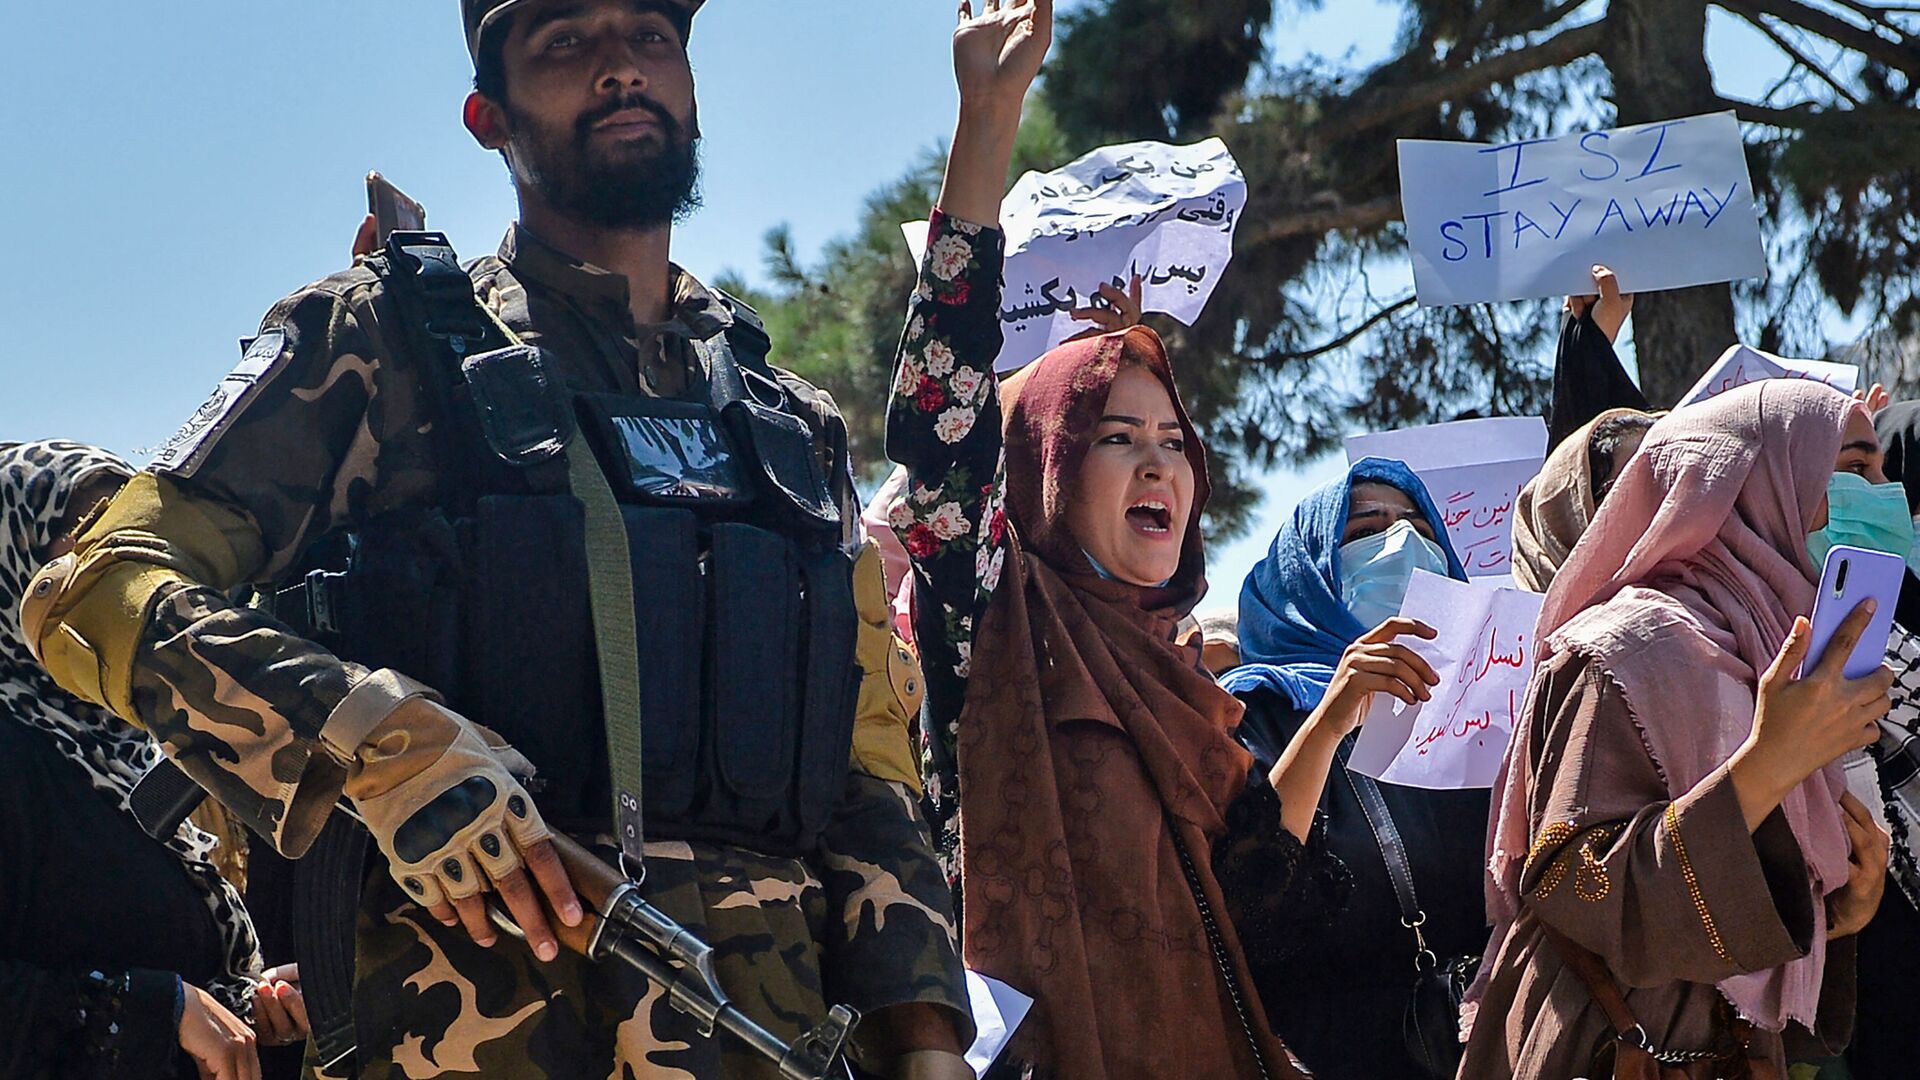 Афганские женщины выкрикивают лозунги рядом с боевиками Талибана во время антипакистанской демонстрации у посольства Пакистана в Кабуле - Sputnik Azərbaycan, 1920, 15.10.2021